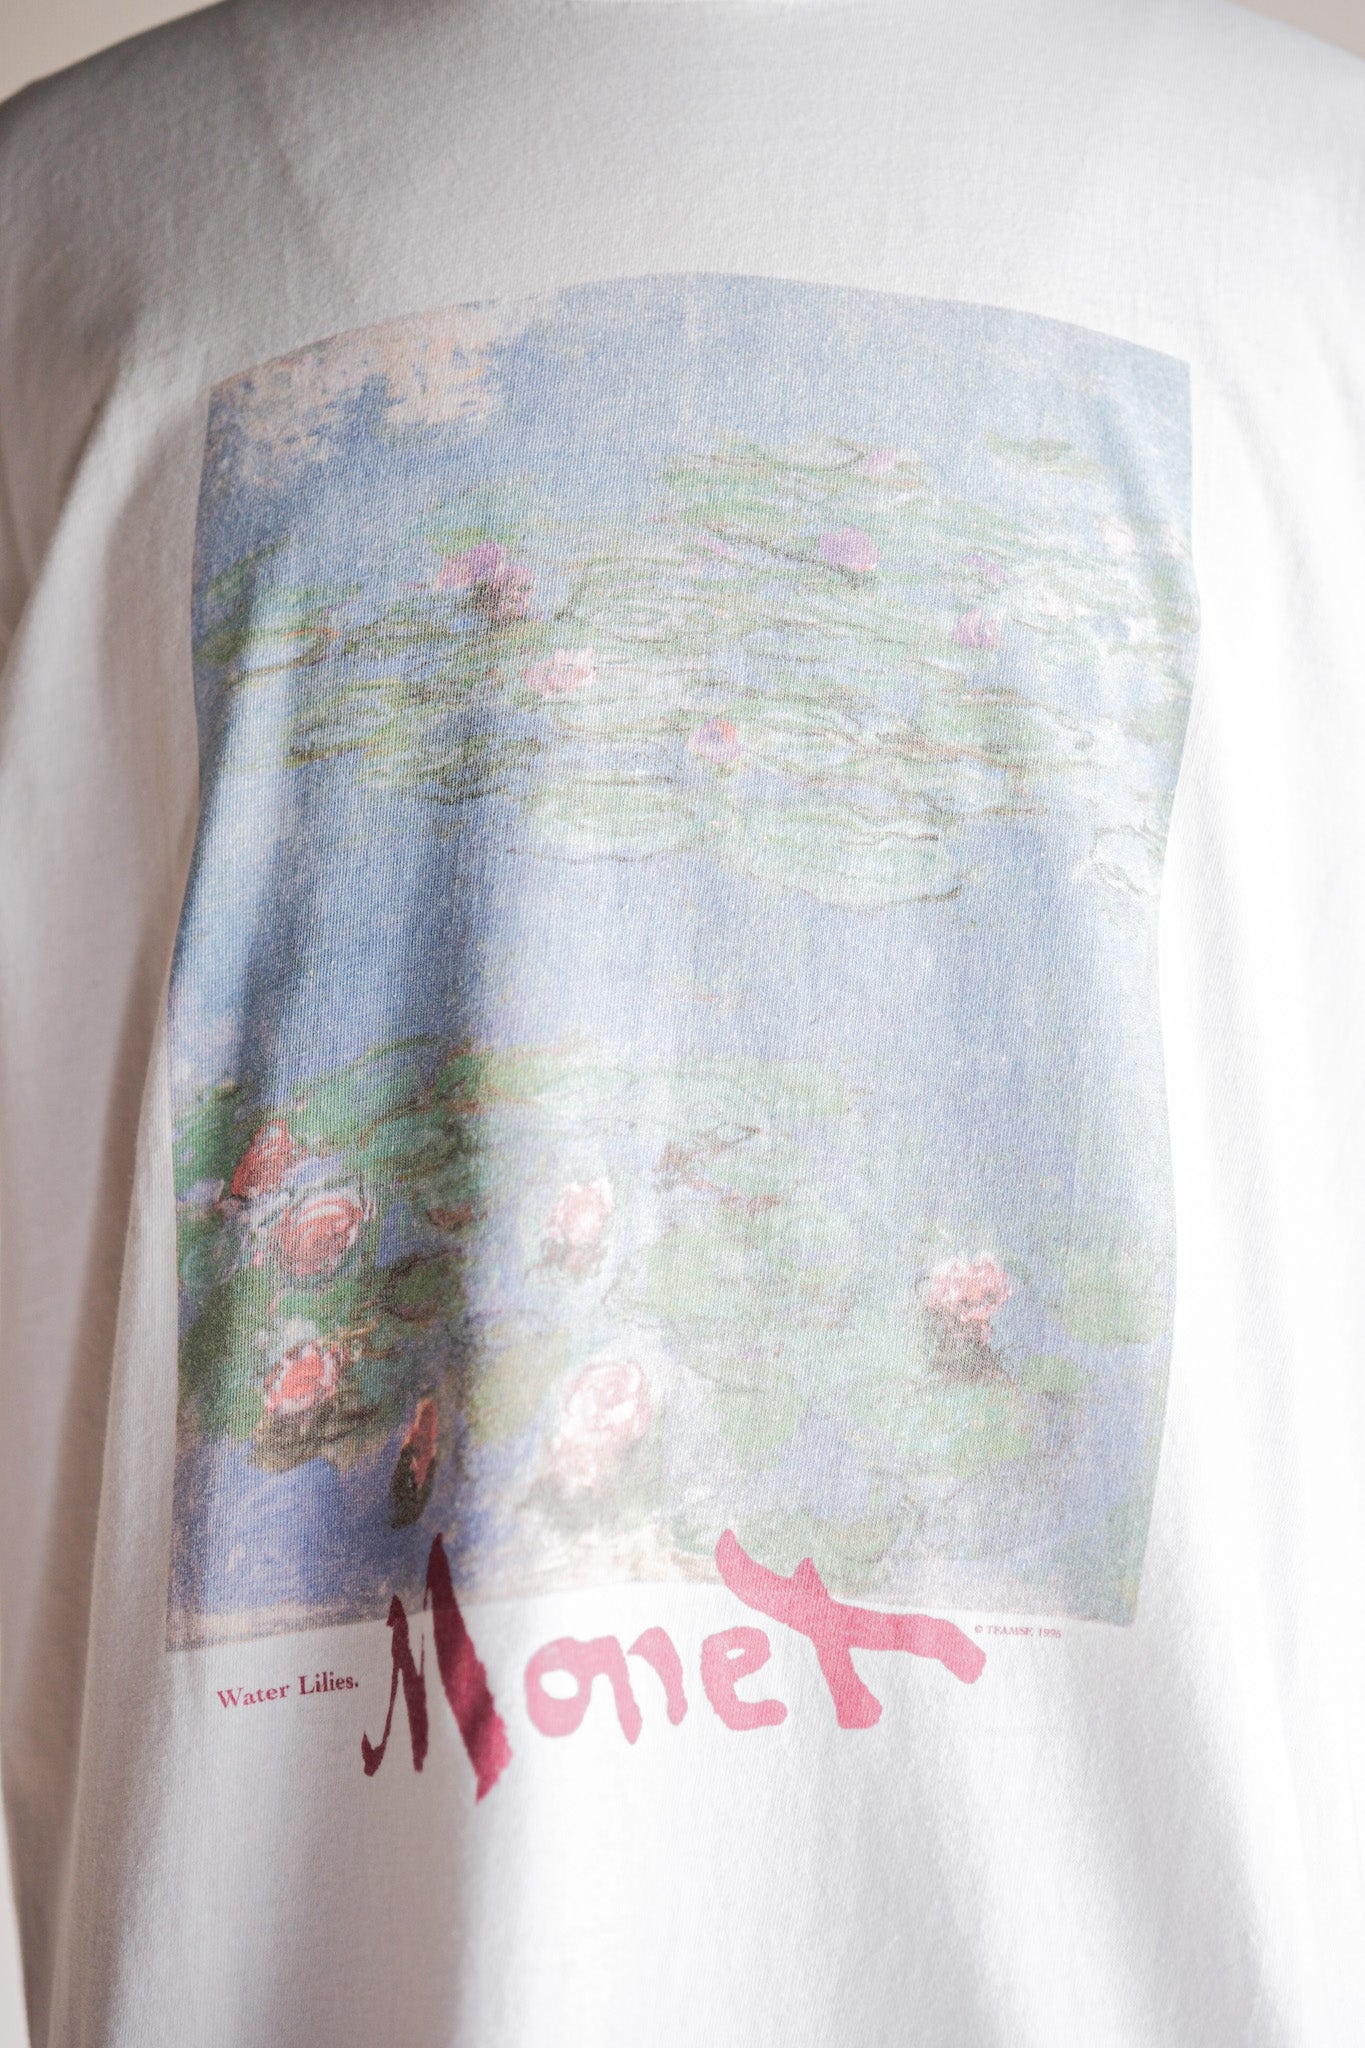 [~ 90 년대] 빈티지 아트 프린트 티셔츠 크기 .xl "Claude Monet" "Water Lilies" "Made in U.S.A."